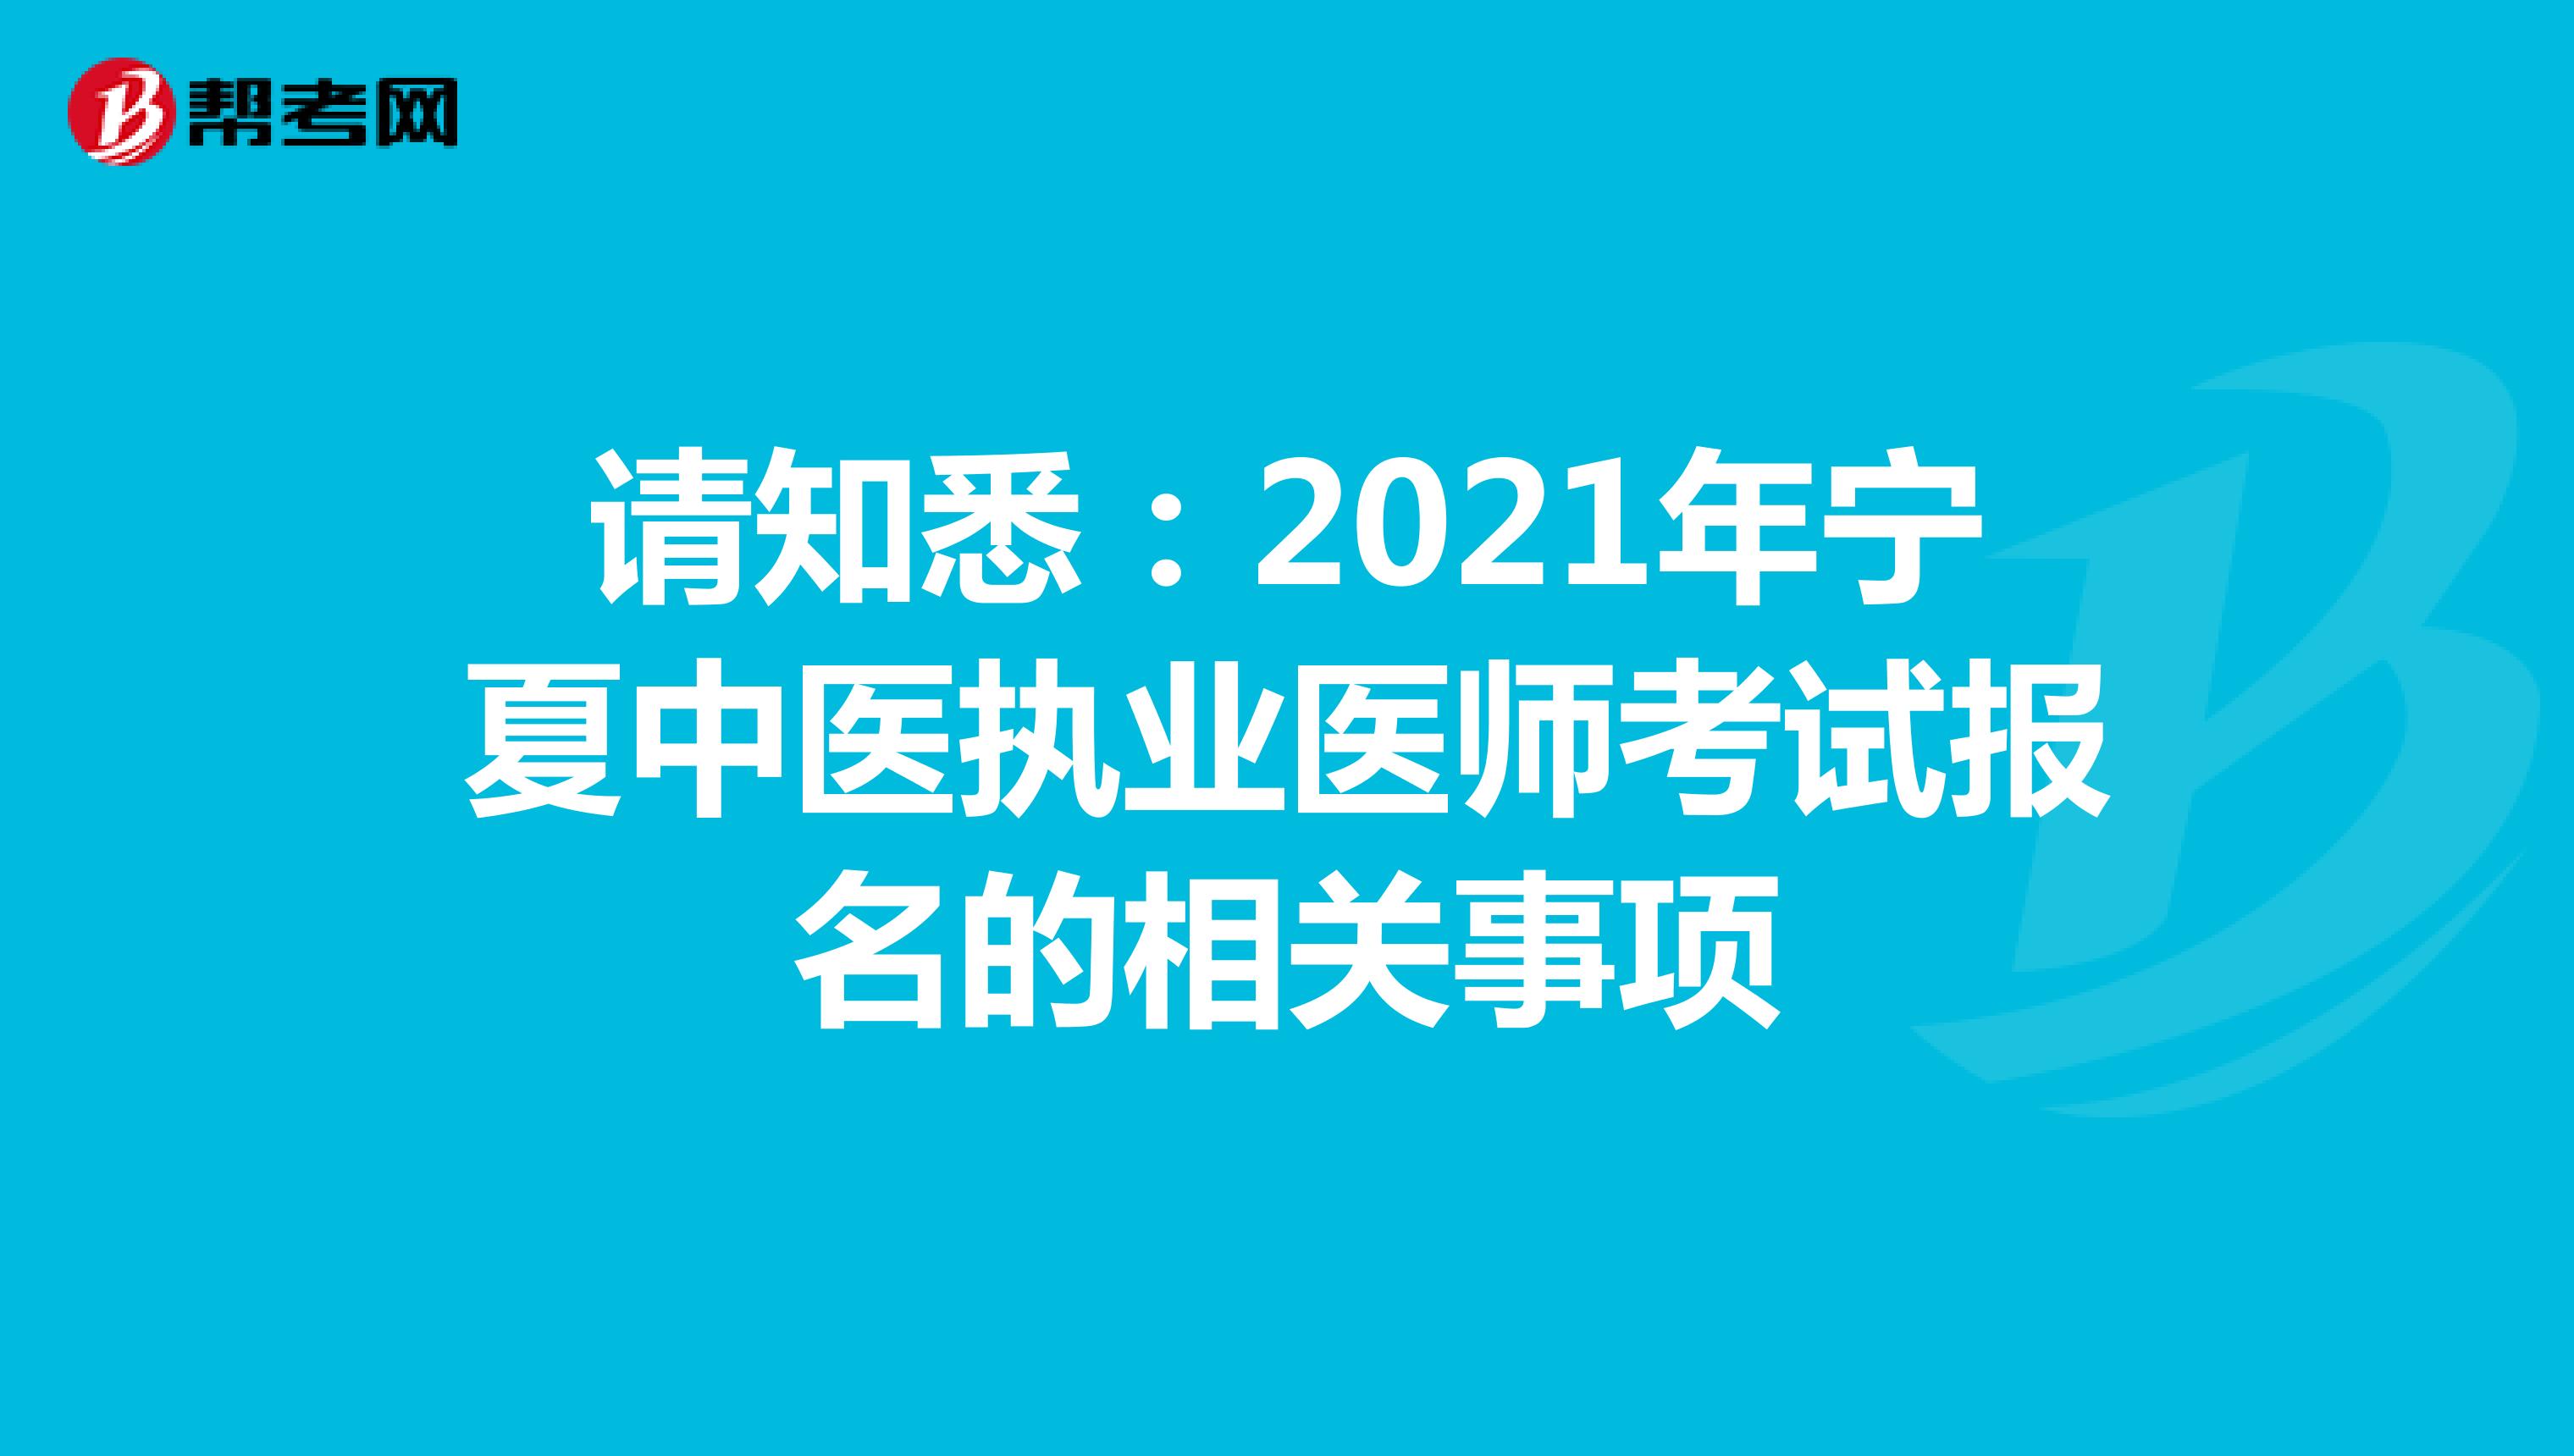 请知悉：2021年宁夏中医执业医师考试报名的相关事项